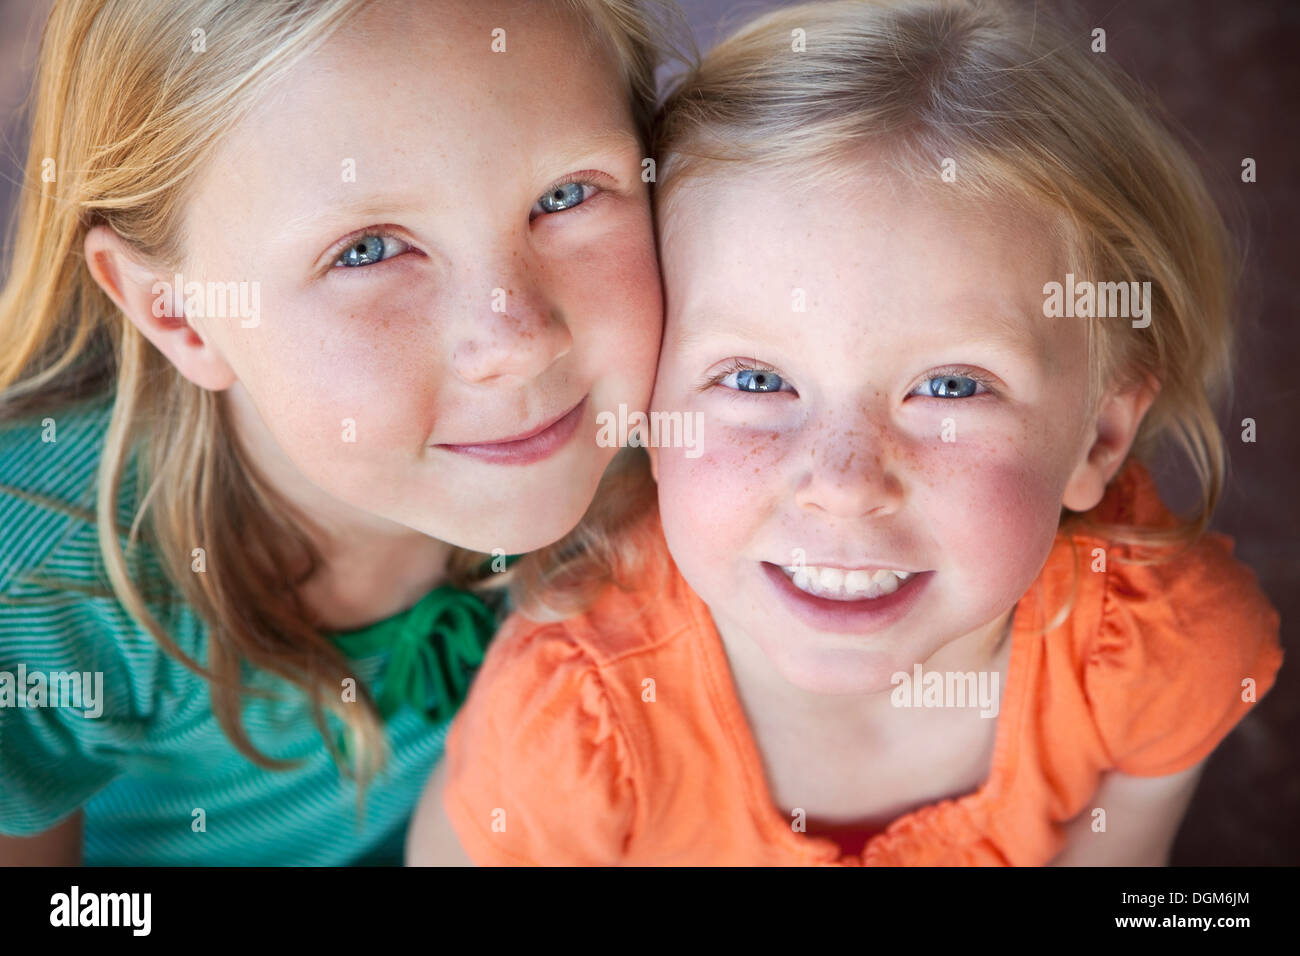 Un ritratto di due sorelle sorridente. Due giovani ragazze, con occhi blu e capelli biondi. Foto Stock